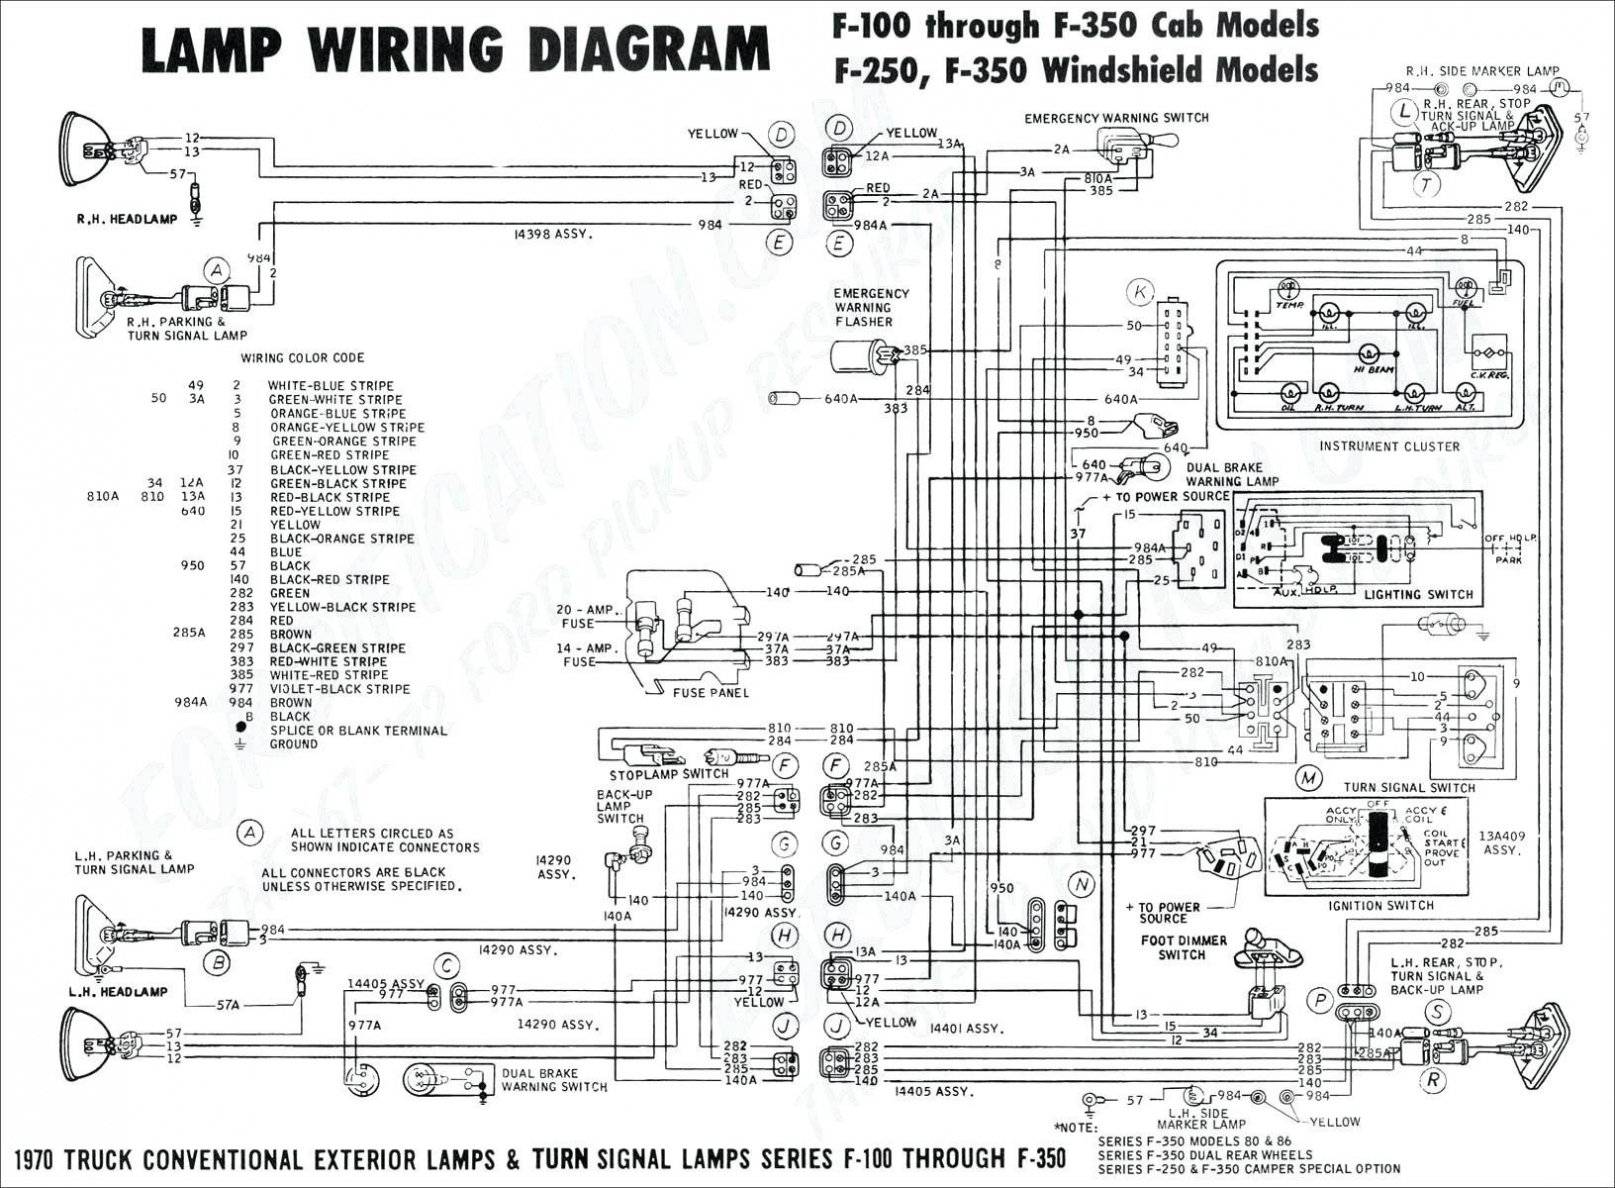 Unique Western Plow Wiring Diagram Wiring – Wiring Diagram - Western Plow Wiring Diagram